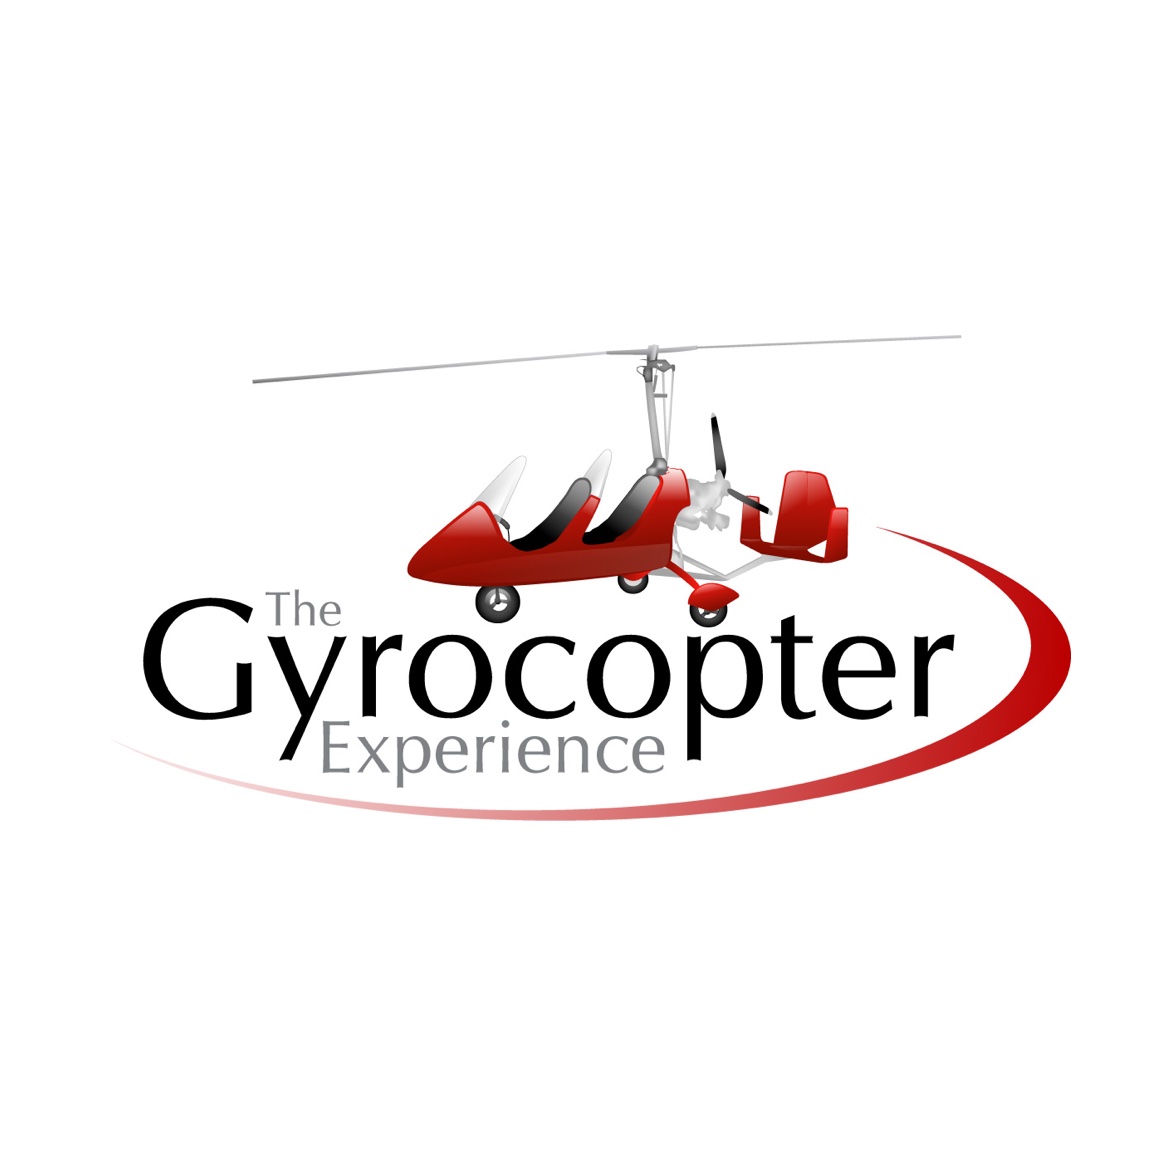 La experiencia de Gyrocopter Devon